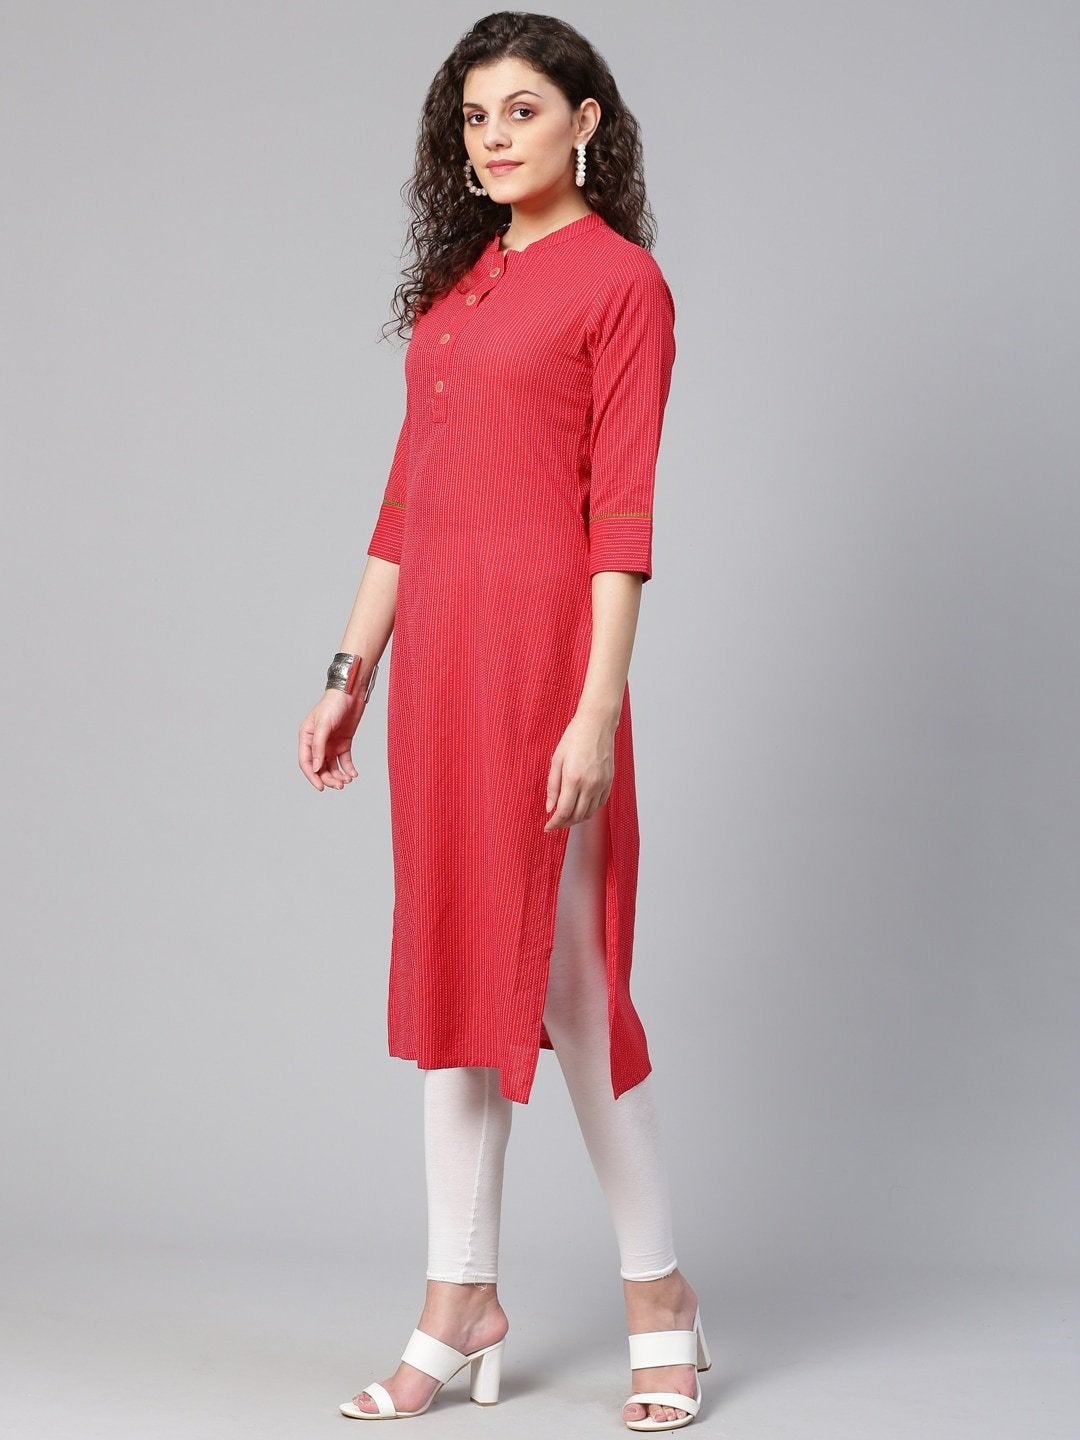 Women's Red & White Self-Striped Straight Kurta - Meeranshi